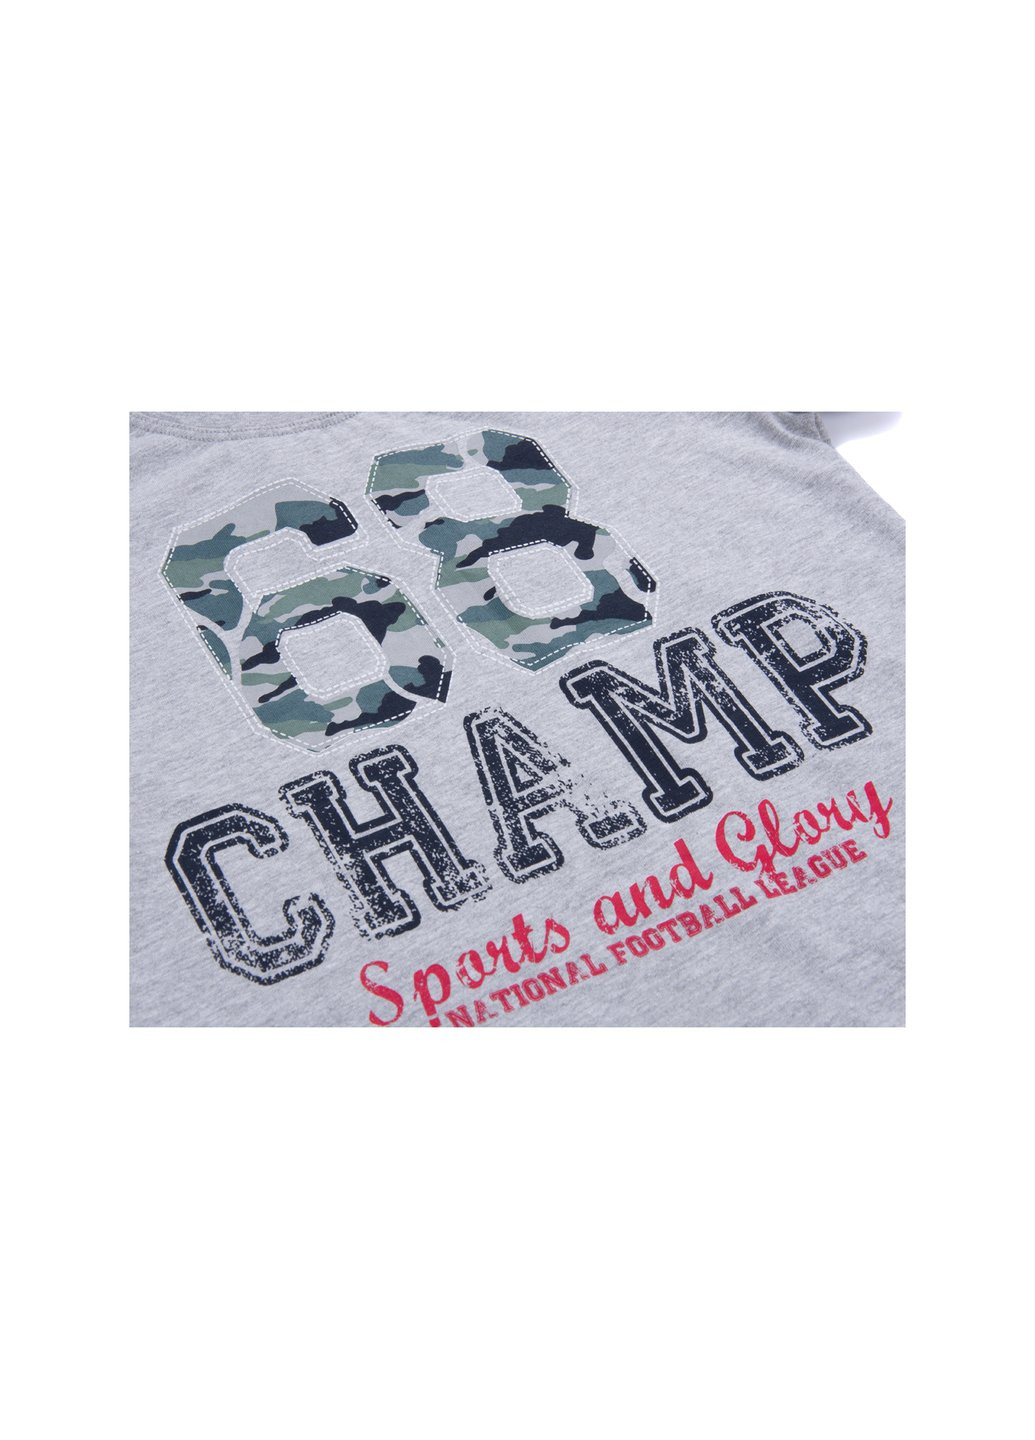 Сірий літній набір дитячого одягу "68 champ" (8964-128b-gray) E&H